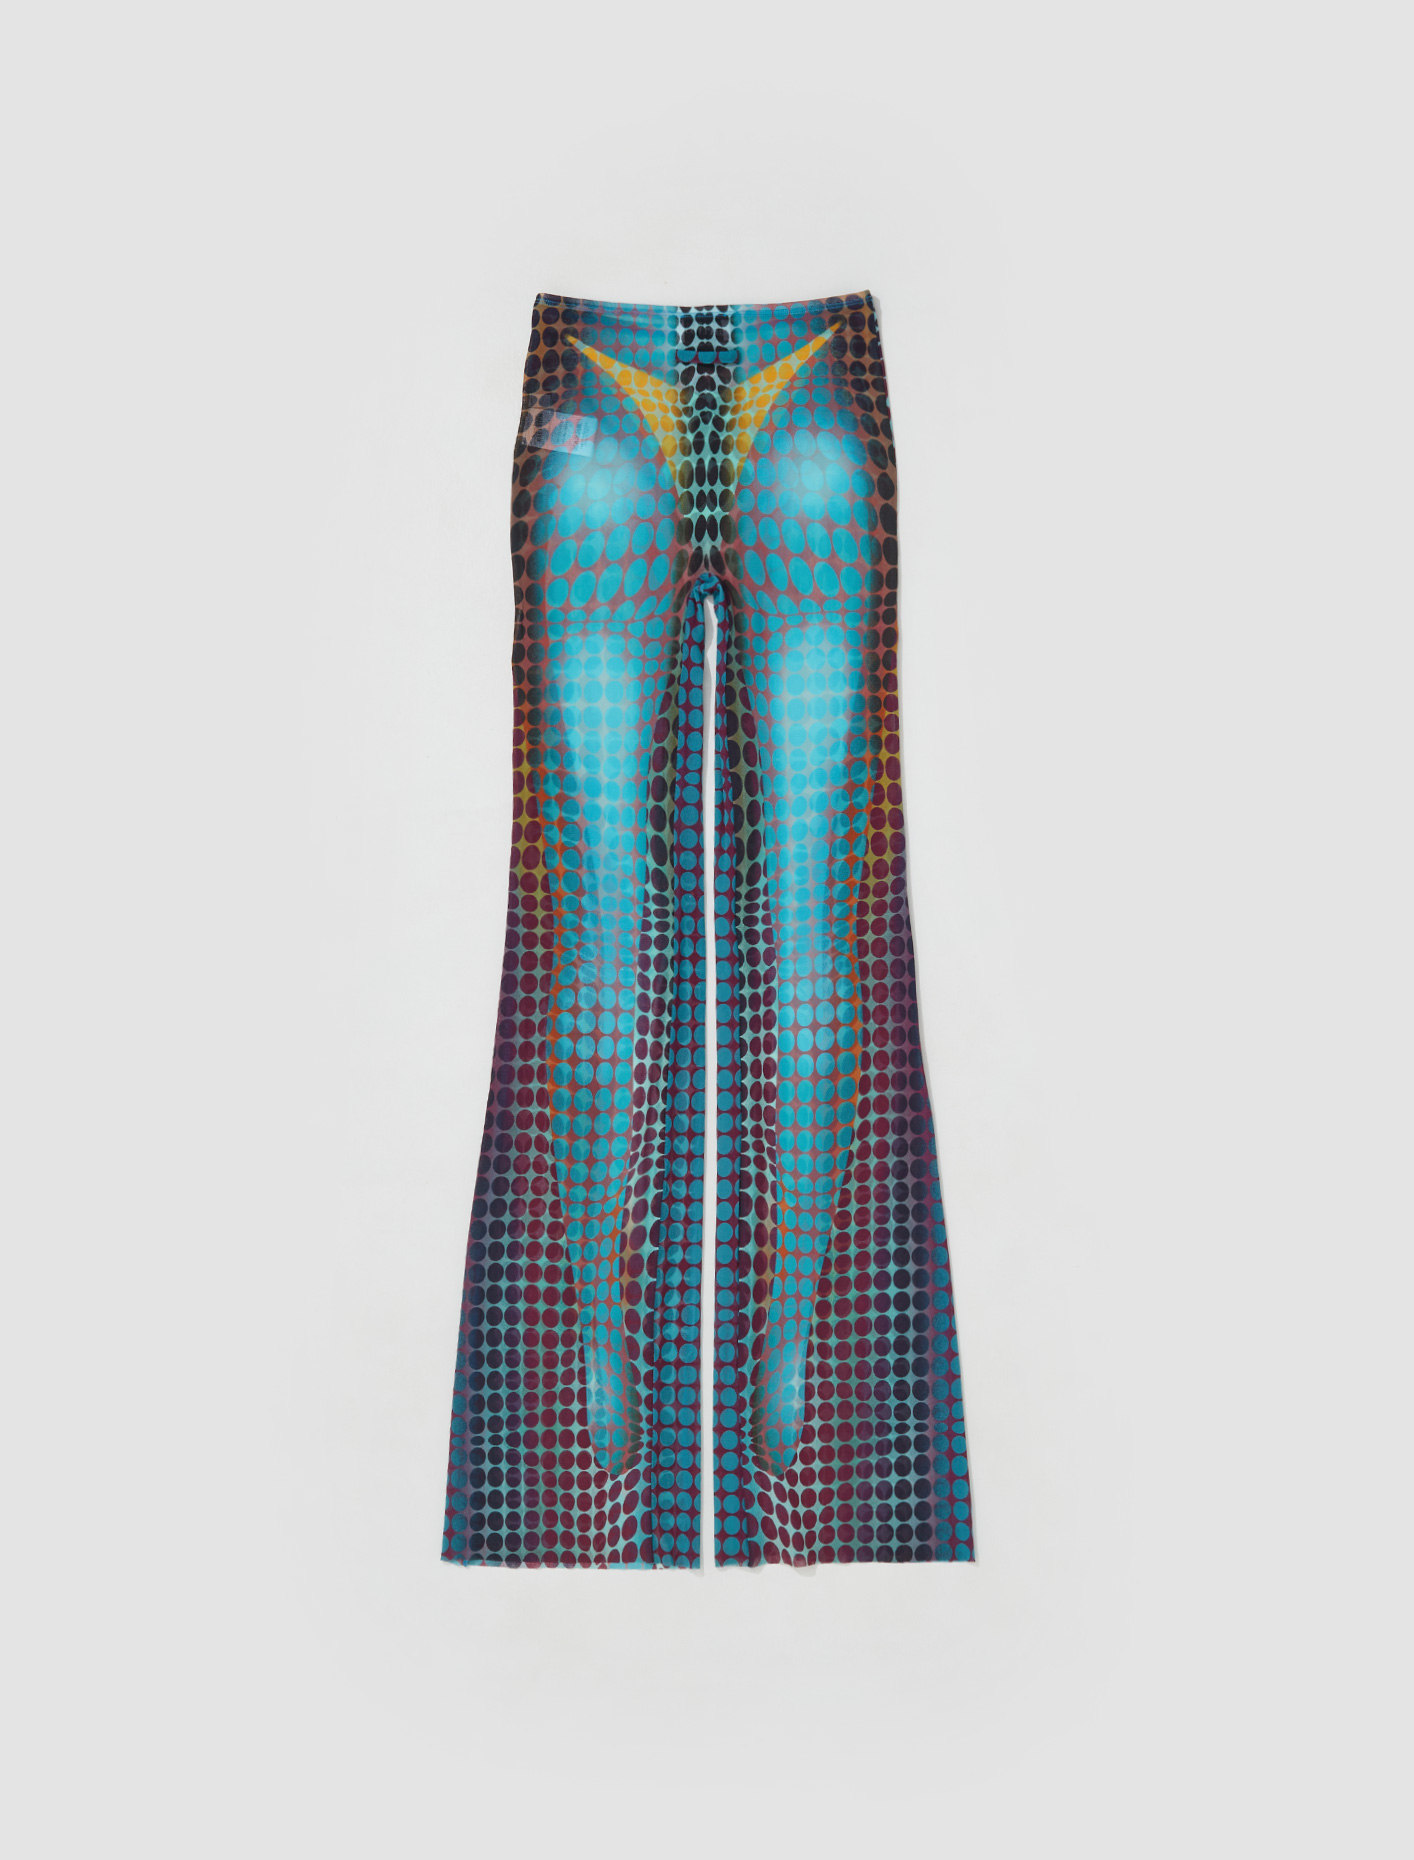 Jean Paul Gaultier Cyber Dot Mesh Trousers in Blue | Voo Store